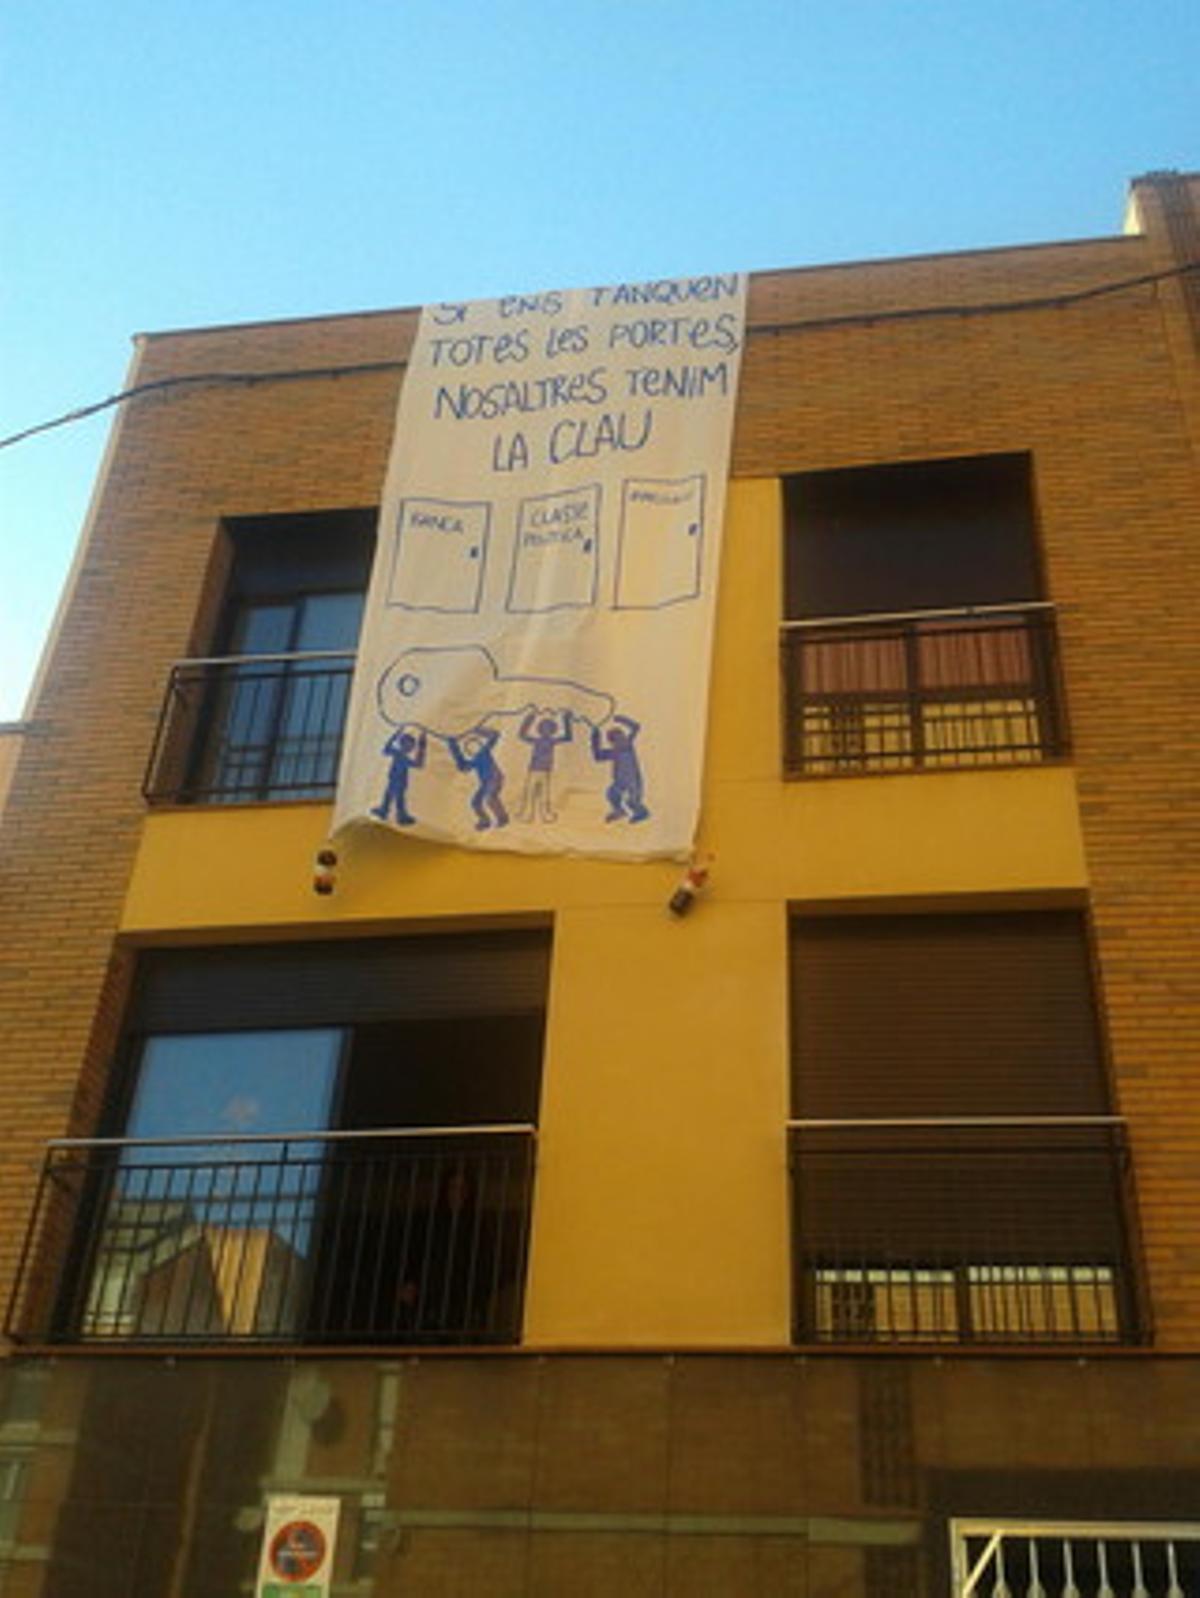 Una pancarta cuelga del bloque ocupado en Sabadell.